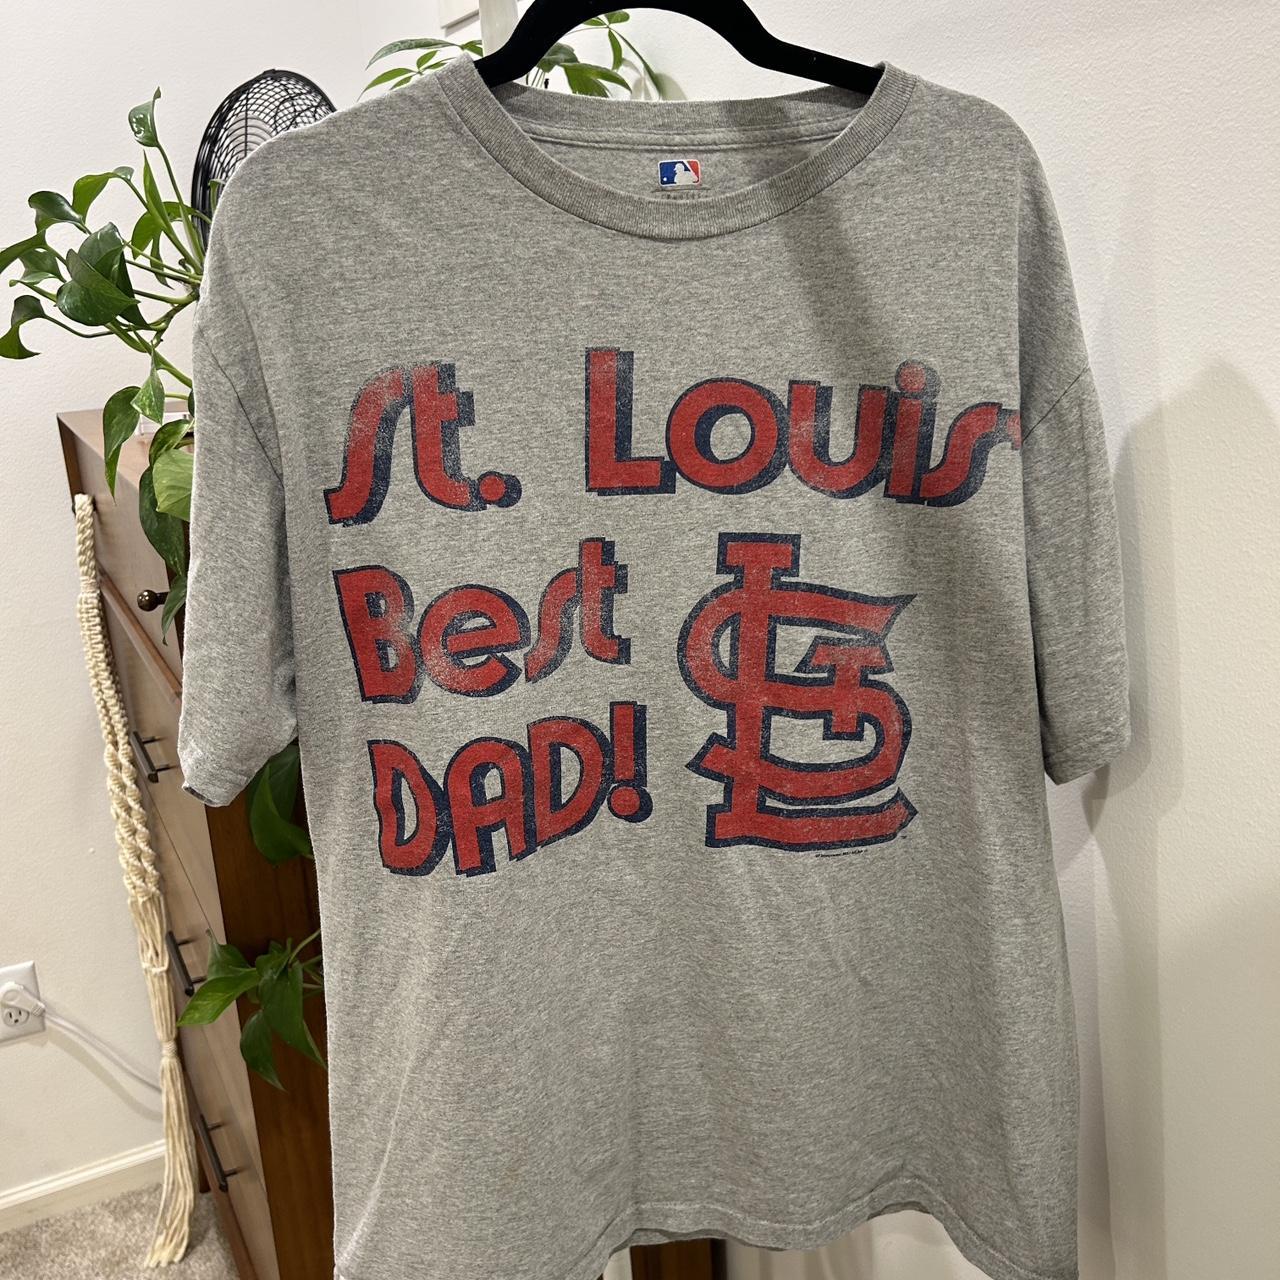 St Louis Cardinals Best Dad Ever Shirt